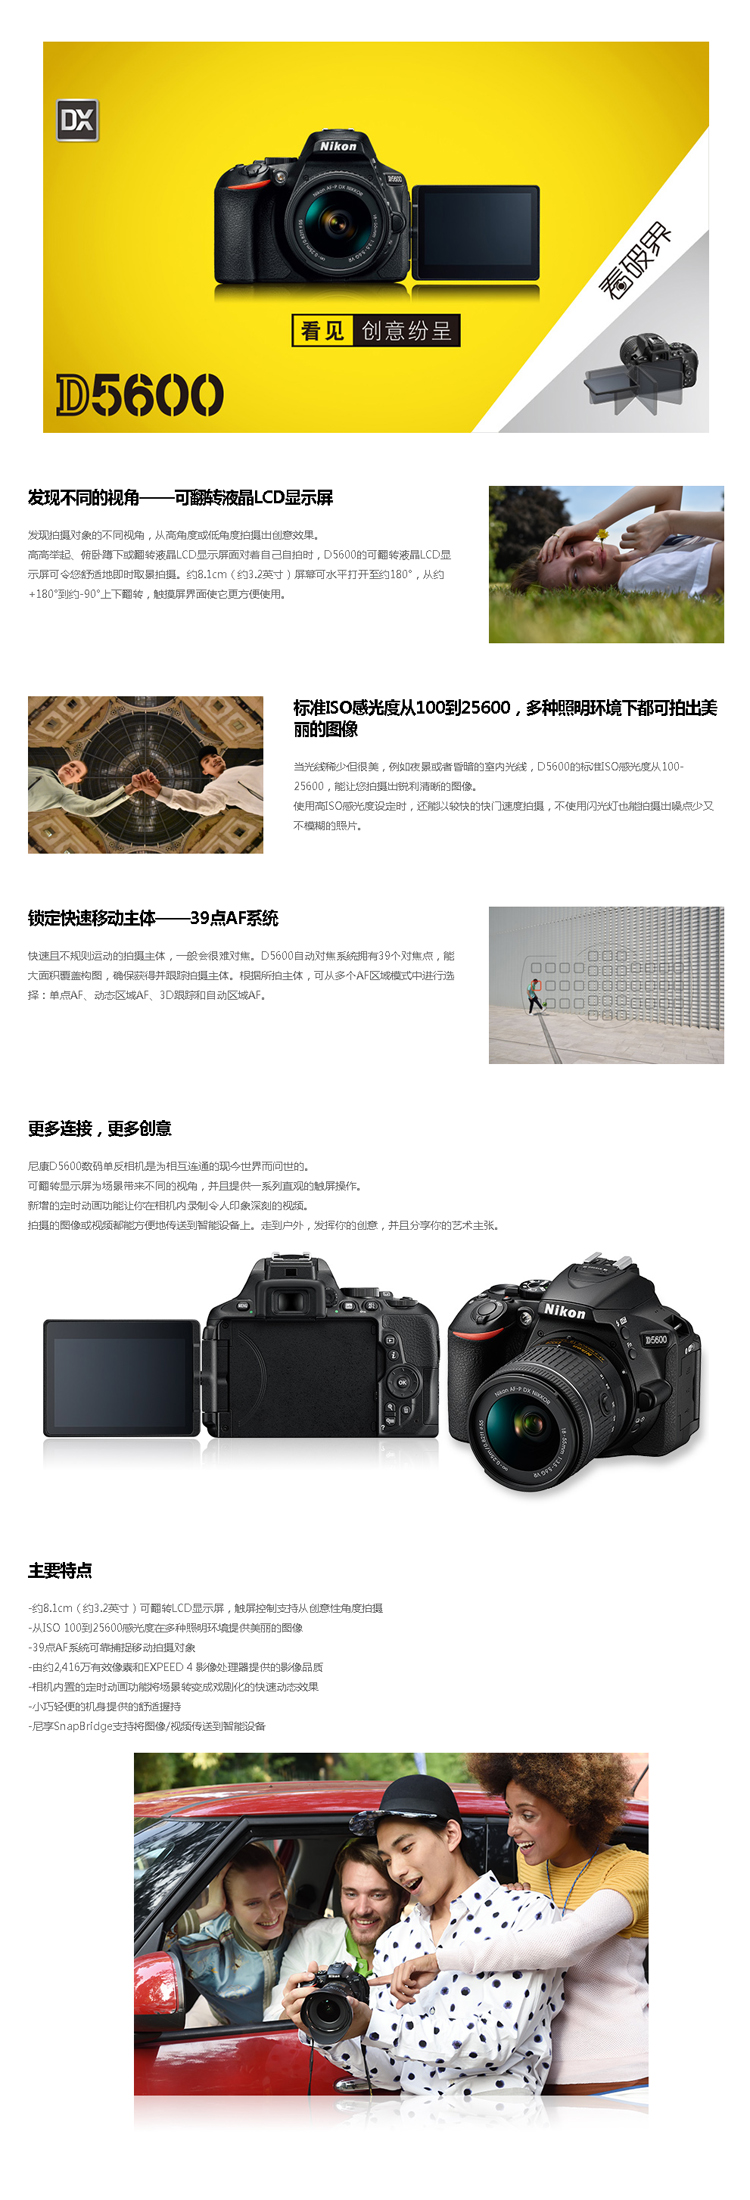 尼康(Nikon)数码单反相机 D5600+AF-S DX 尼克尔18-105mm f/3.5-5.6G ED VR镜头